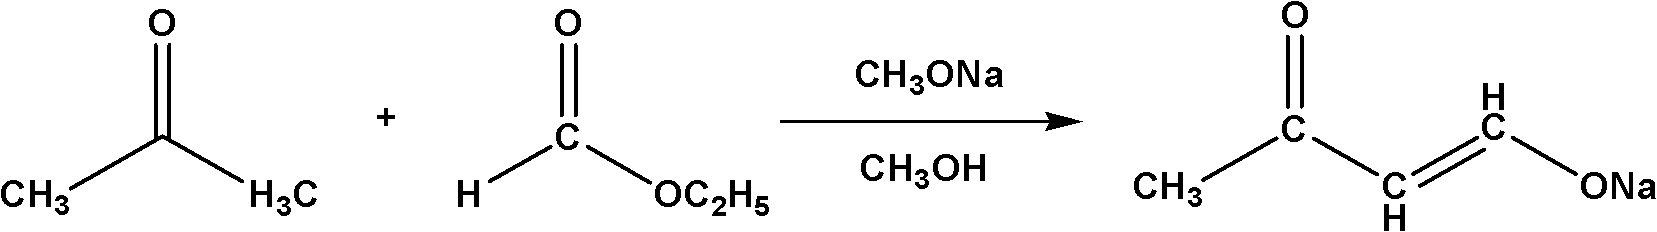 Method for synthesizing 4,4-dimethoxy-2-butanone